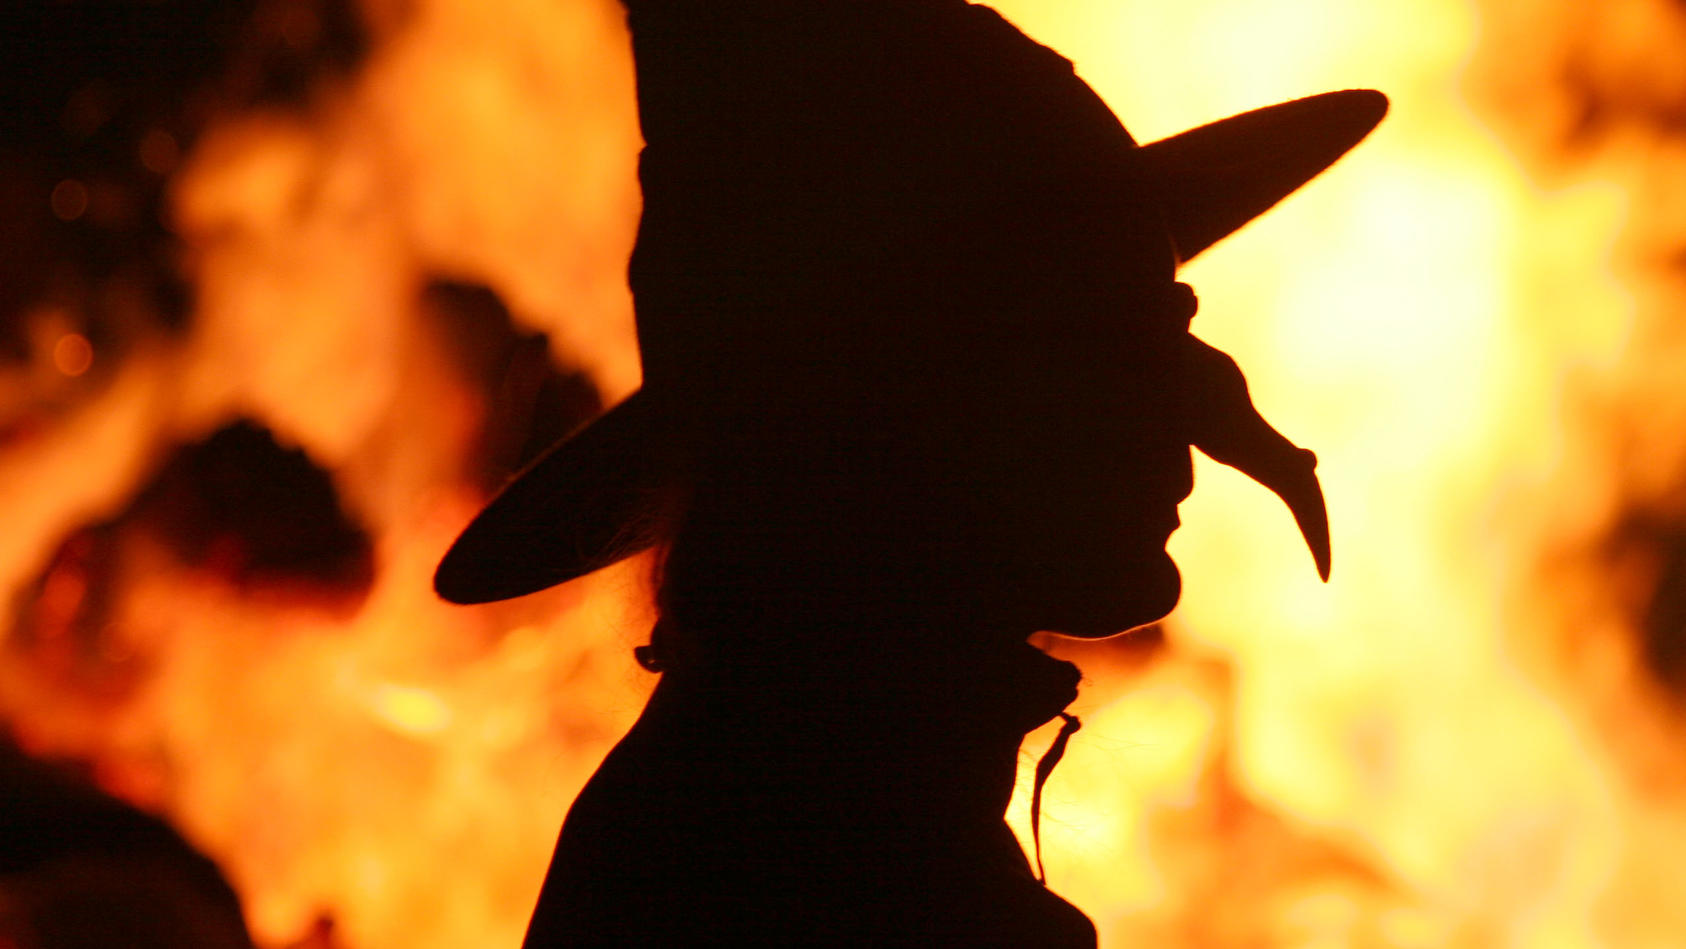 ARCHIV - Vor einem Lagerfeuer tanzt eine Hexe in der Walpurgisnacht im Harzort Schierke (Archivfoto vom 30.04.2007). Zu den Walpurgisfeiern in der Nacht zum 1. Mai werden im Harz wieder weit mehr als 100 000 Besucher erwartet. Nach Angaben des Harzer